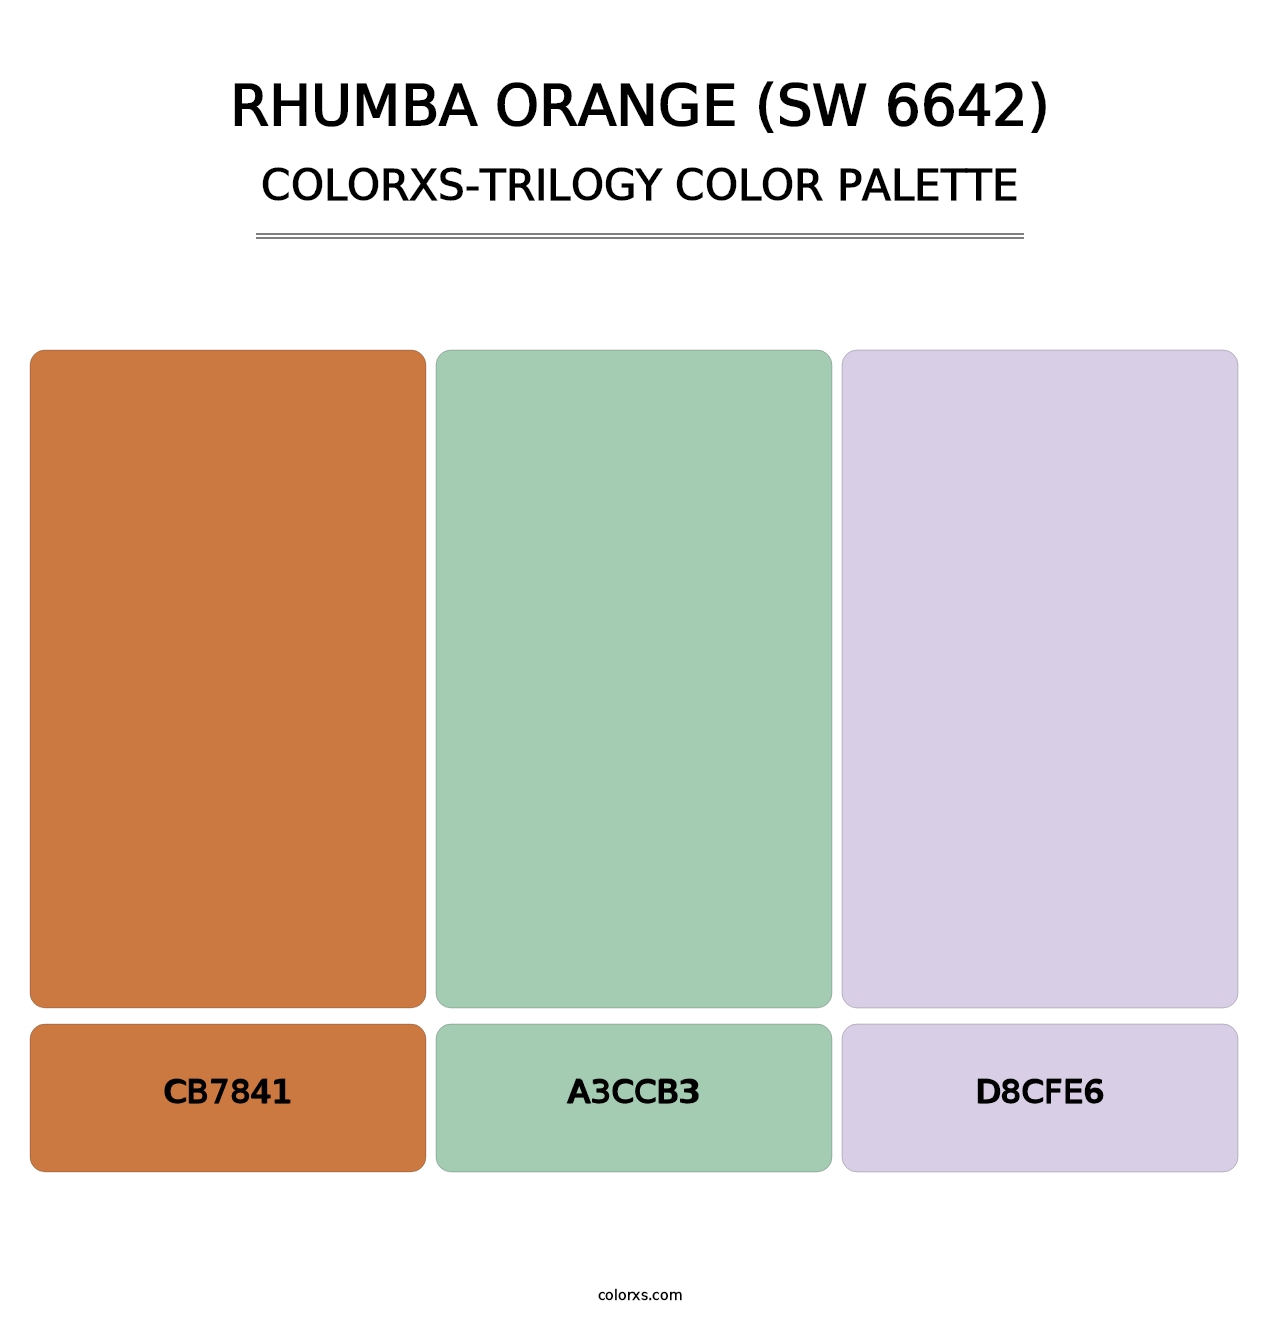 Rhumba Orange (SW 6642) - Colorxs Trilogy Palette